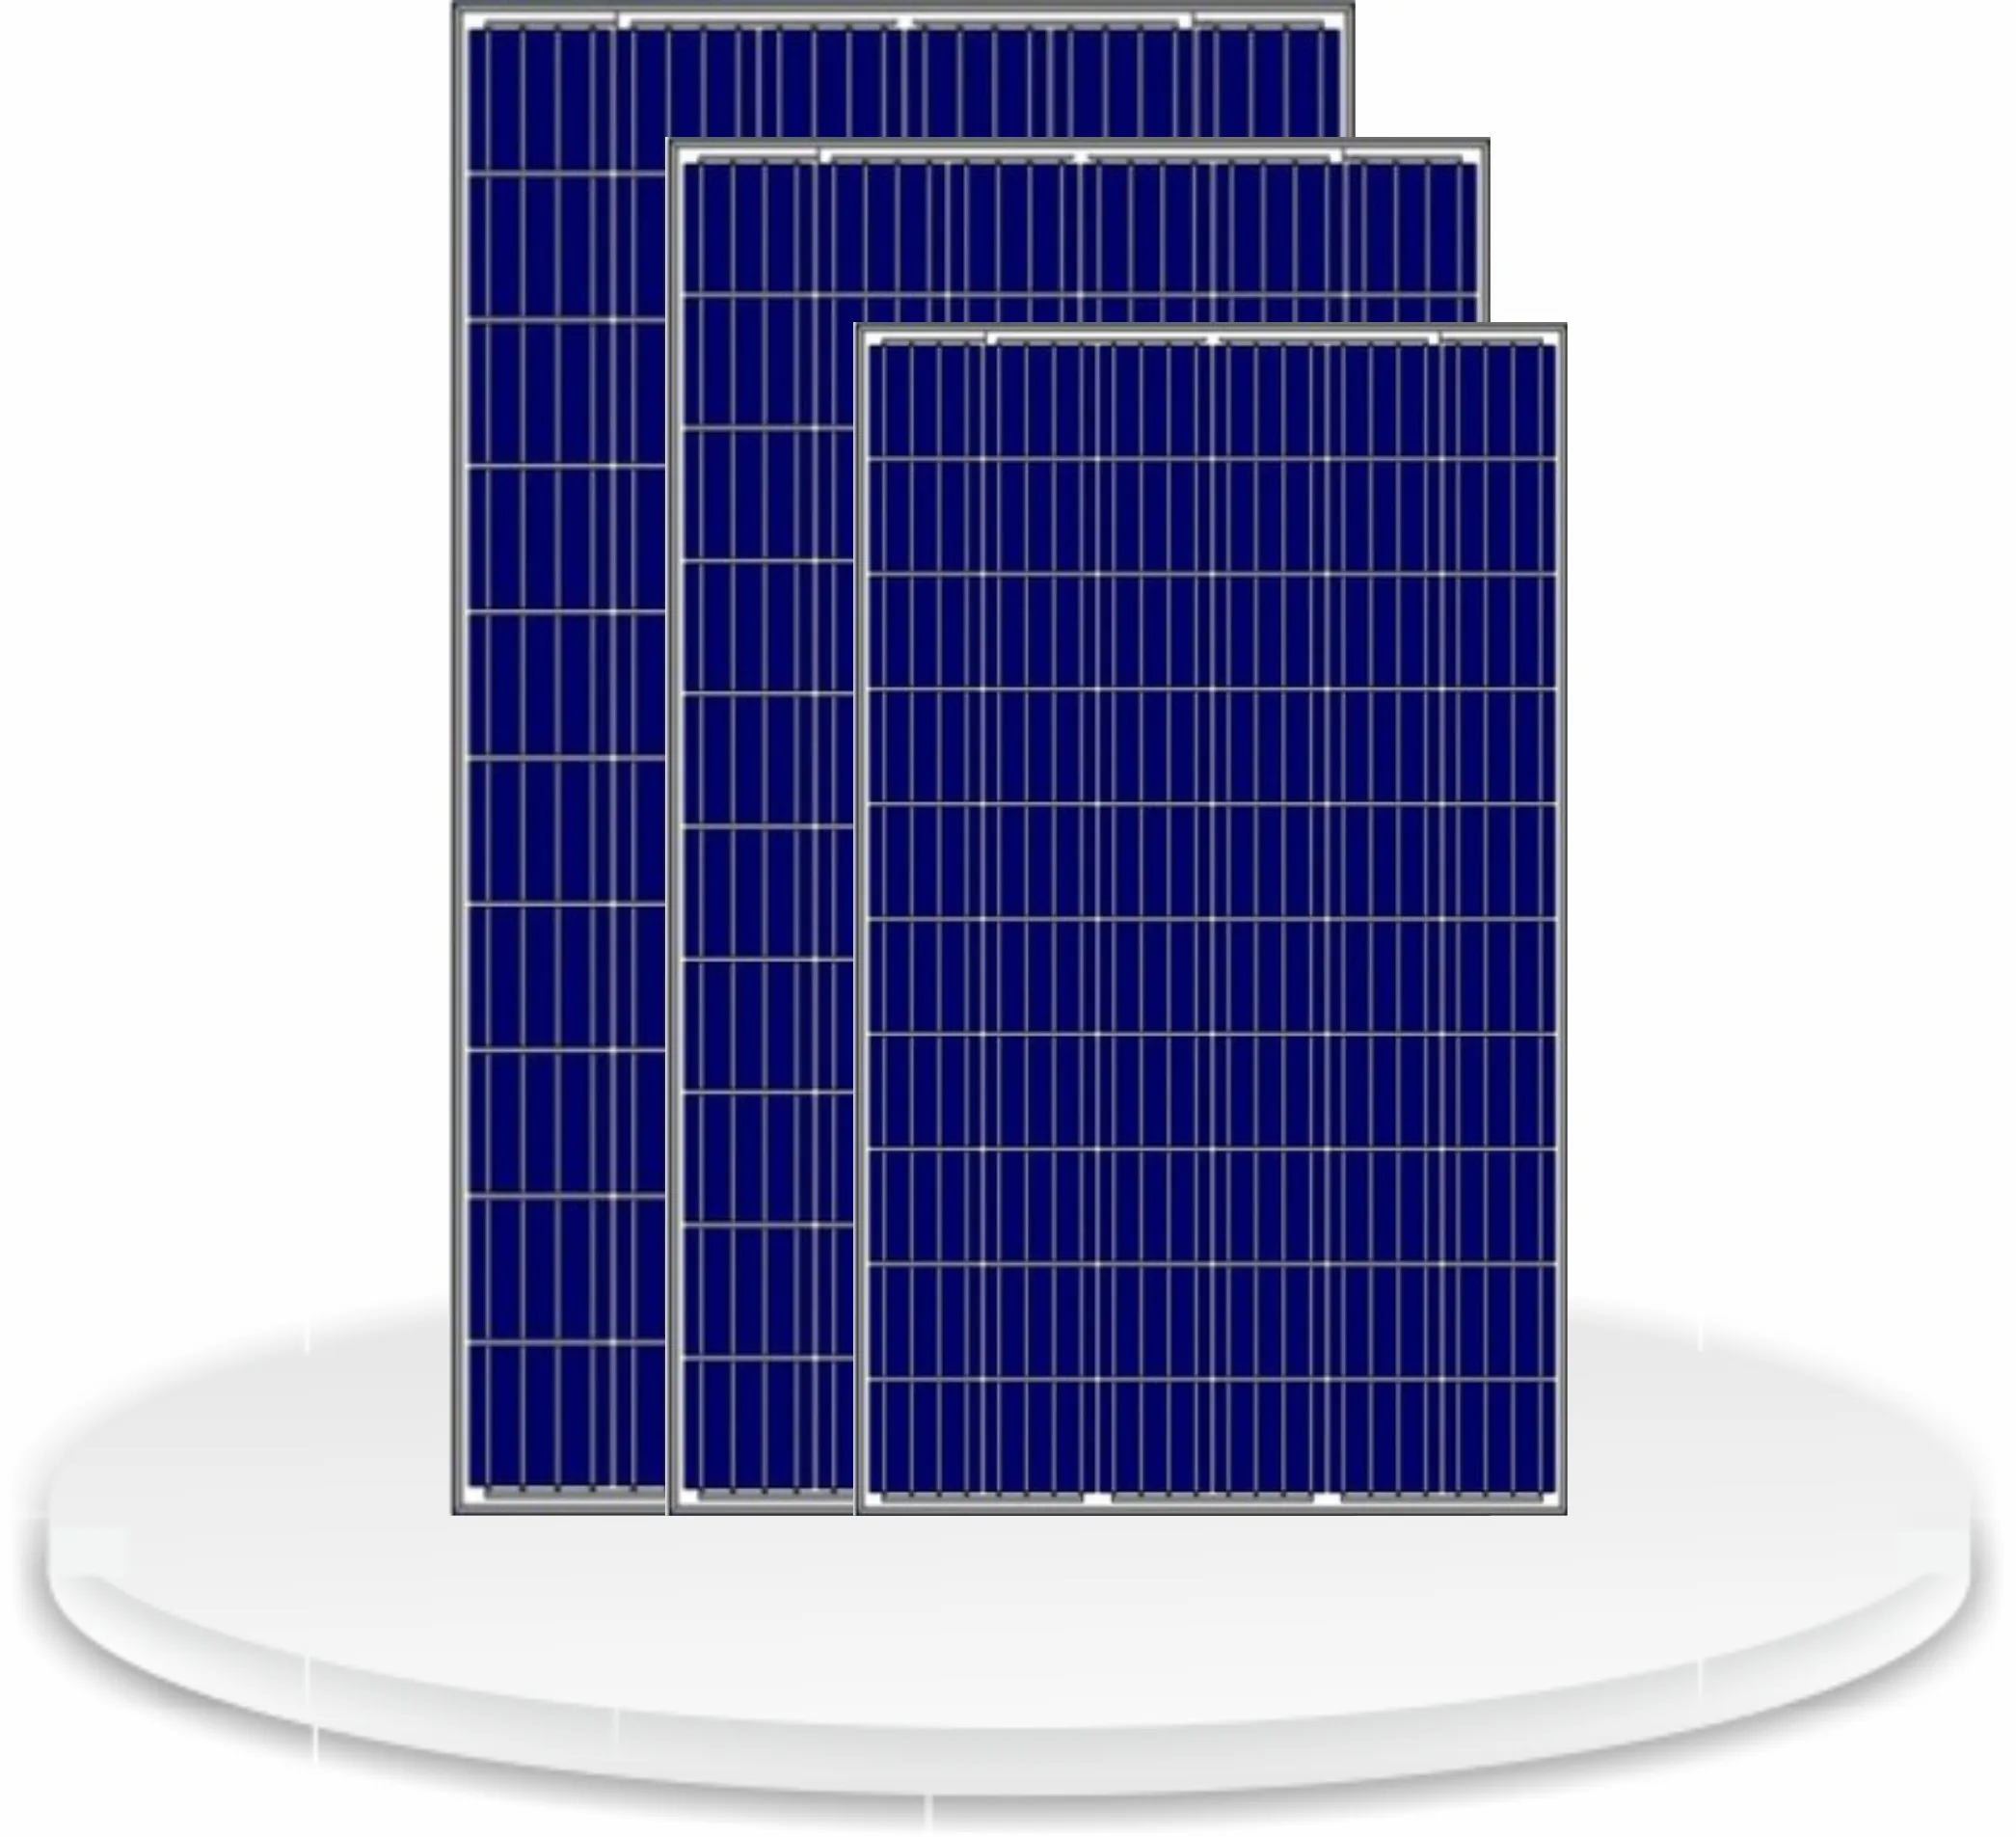 뜨거운 판매 경쟁력있는 가격 150 W 폴리 태양 전지 패널 품질 제품 가격에 25 년 보증 판매